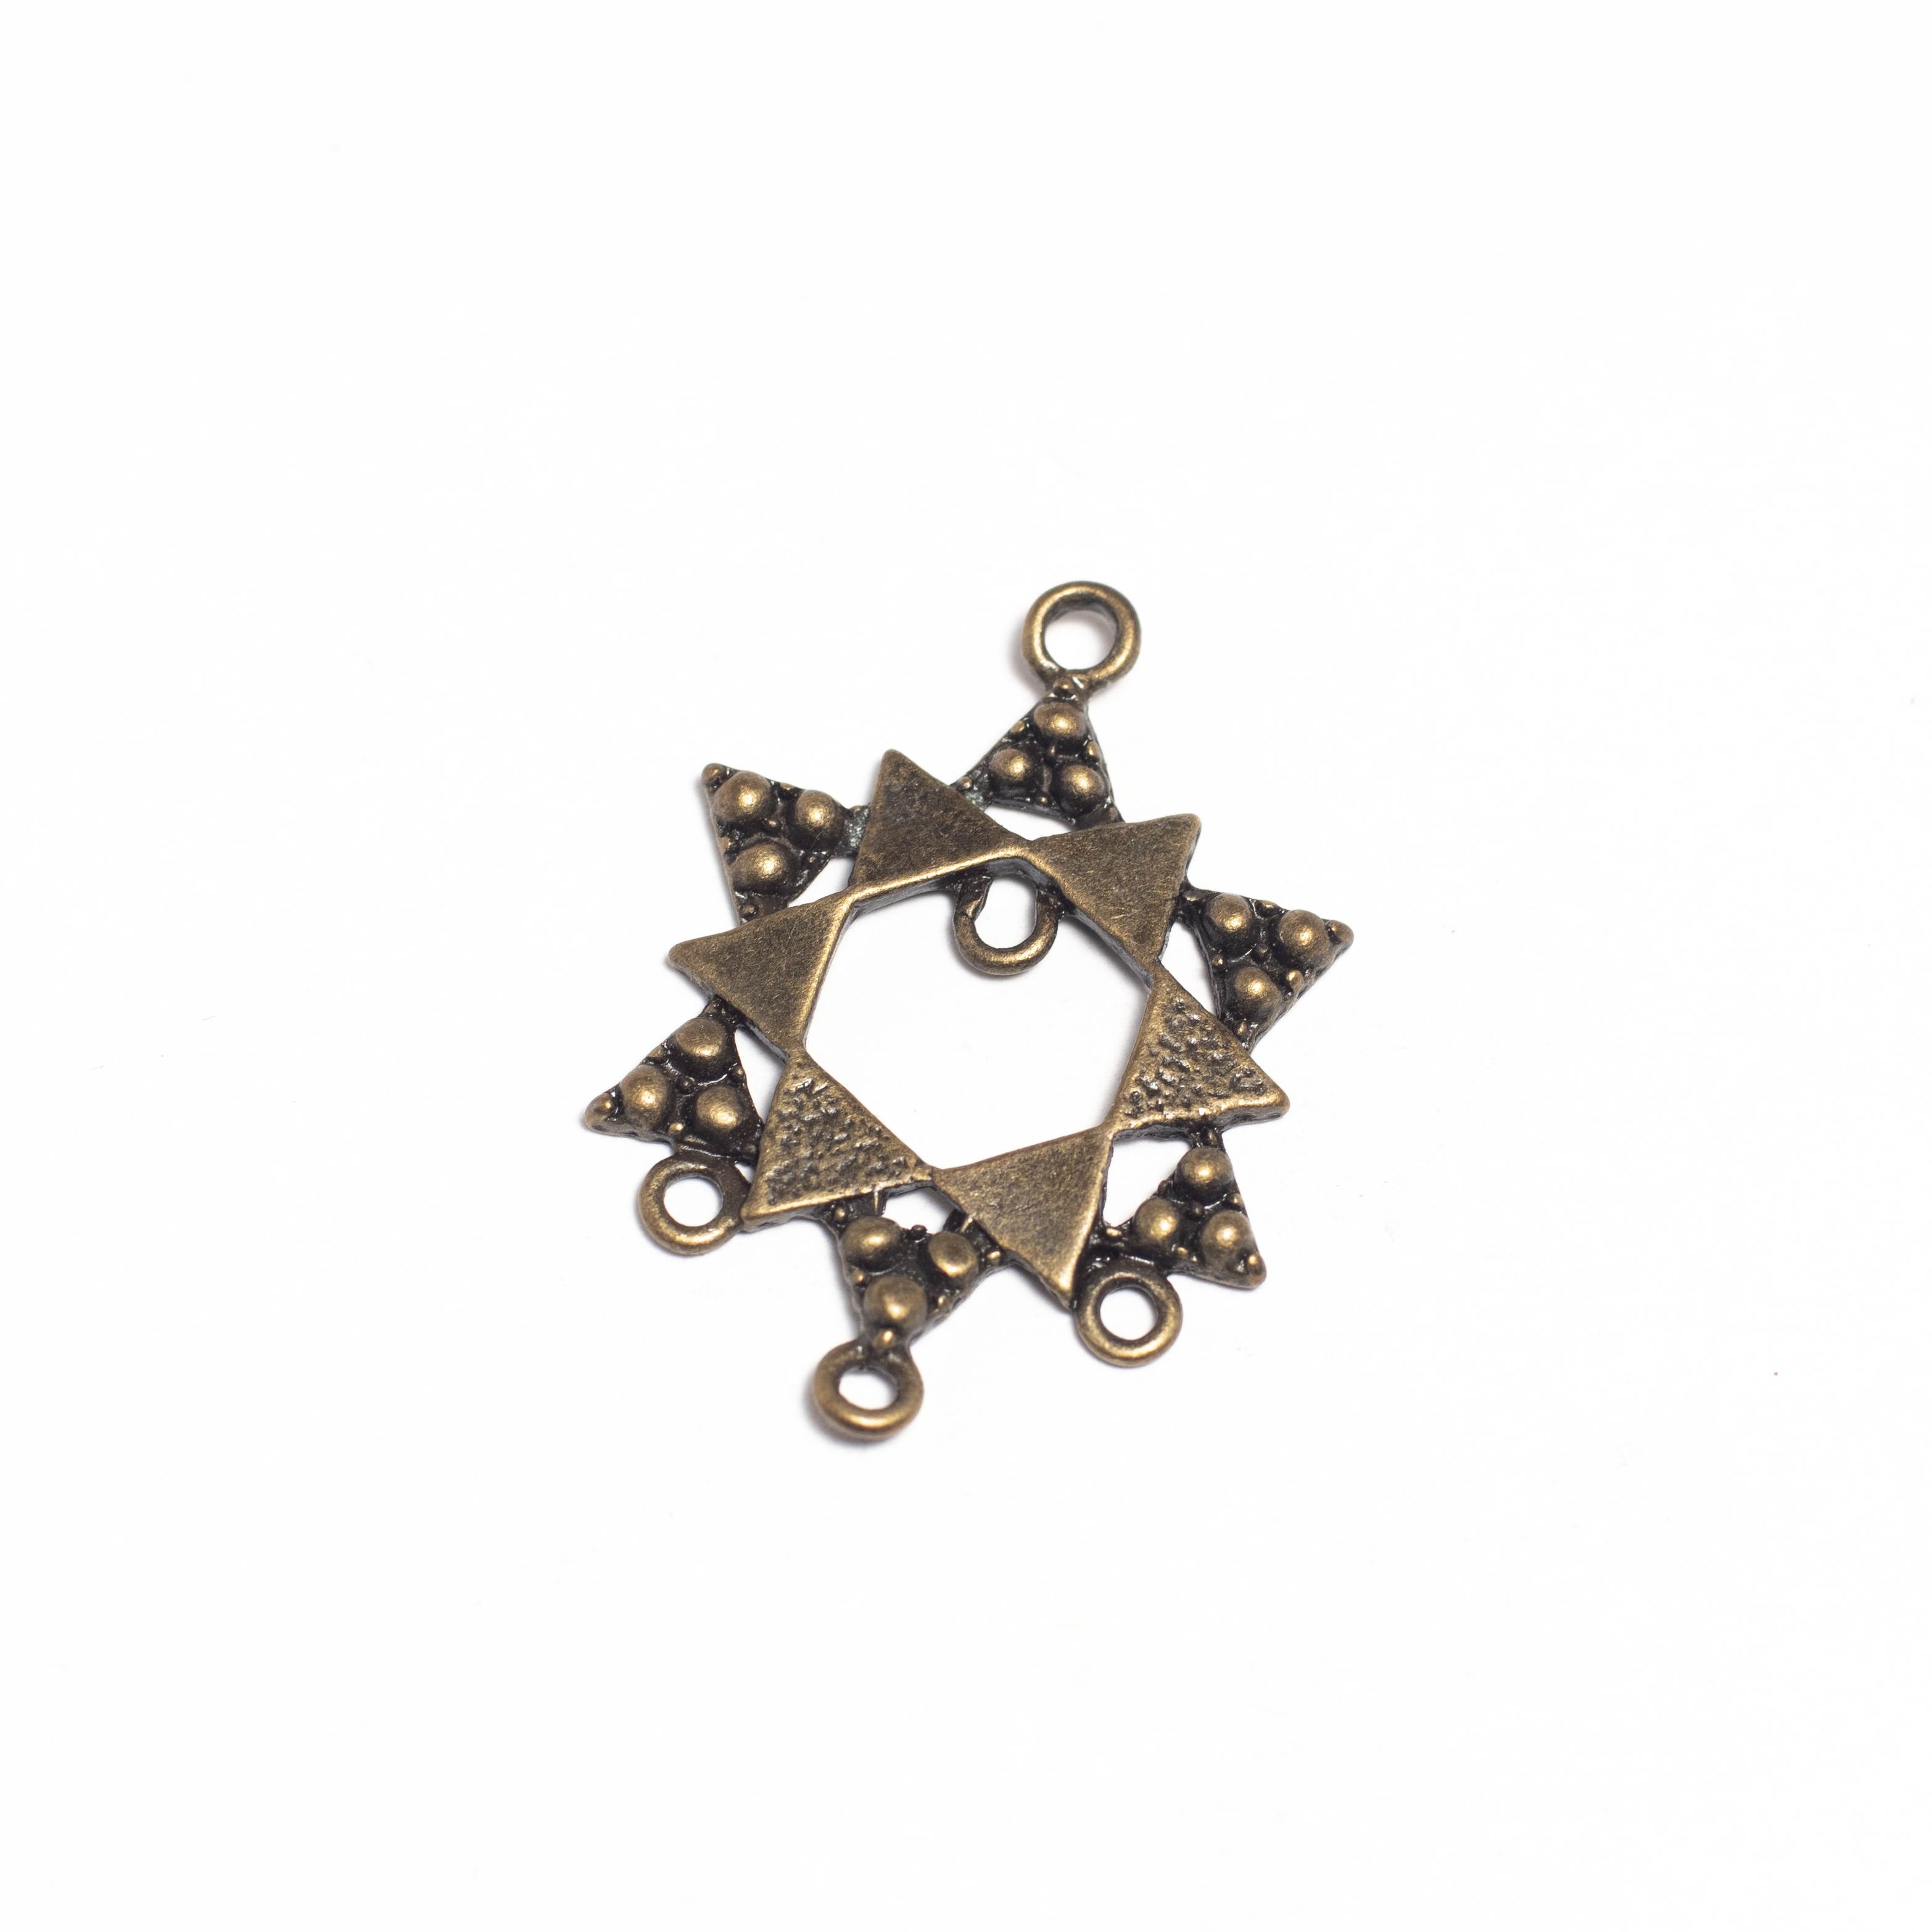 Csillag medálalap, fülbevalóalap, összekötő, antik bronz színű, 36x25 mm